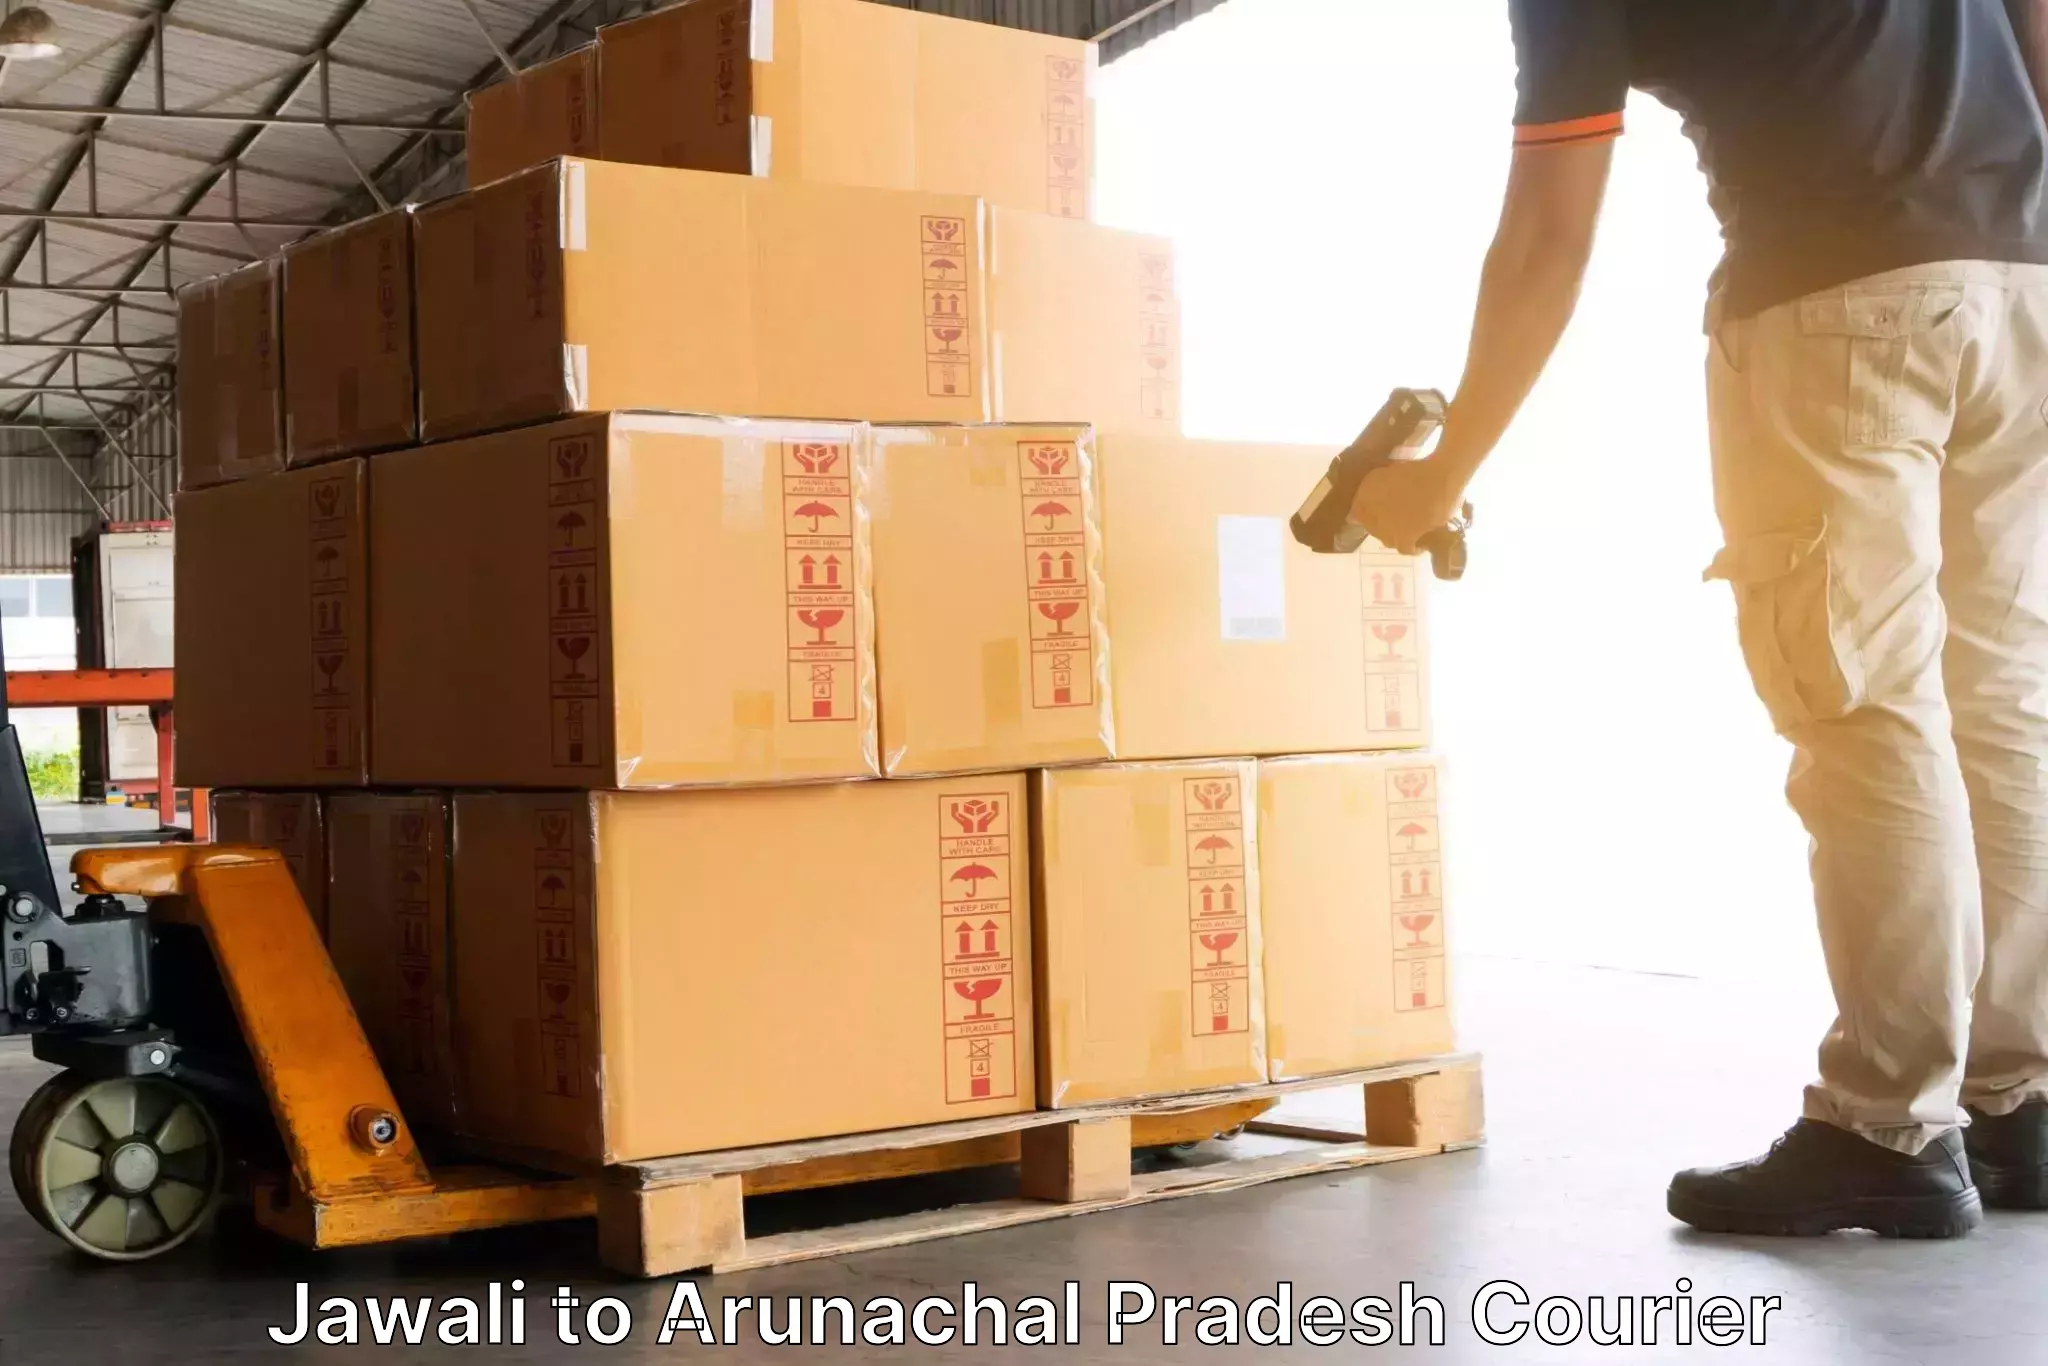 Customer-oriented courier services Jawali to Arunachal Pradesh